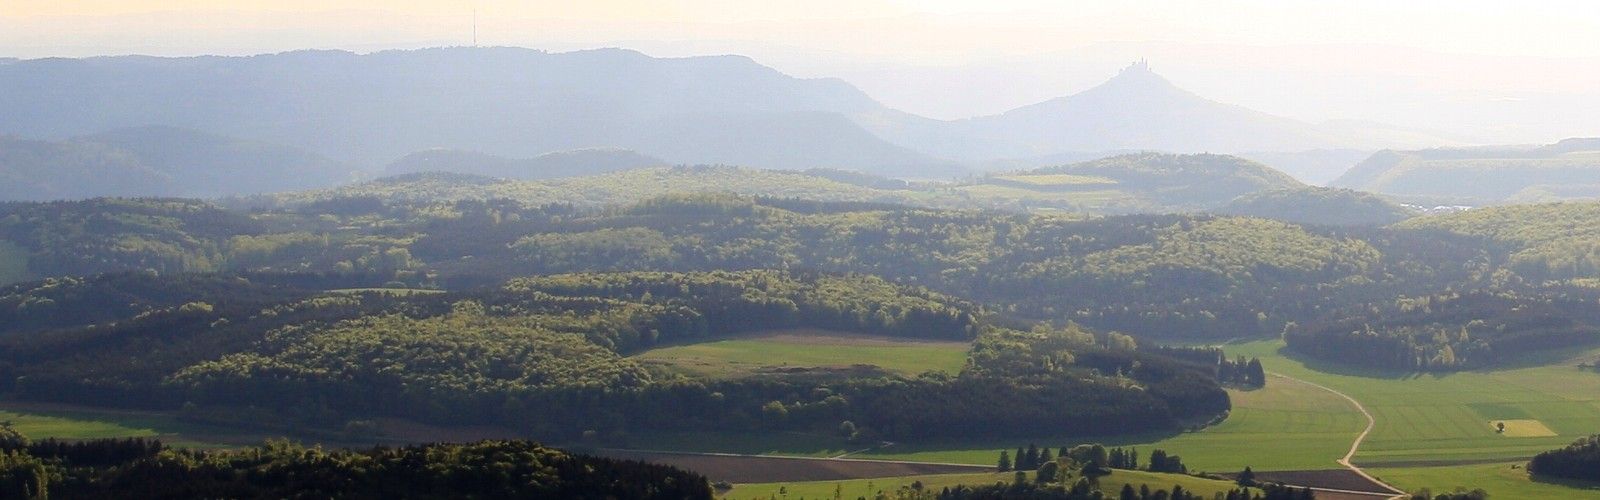 Blick auf Hohenzollern aus der Luft